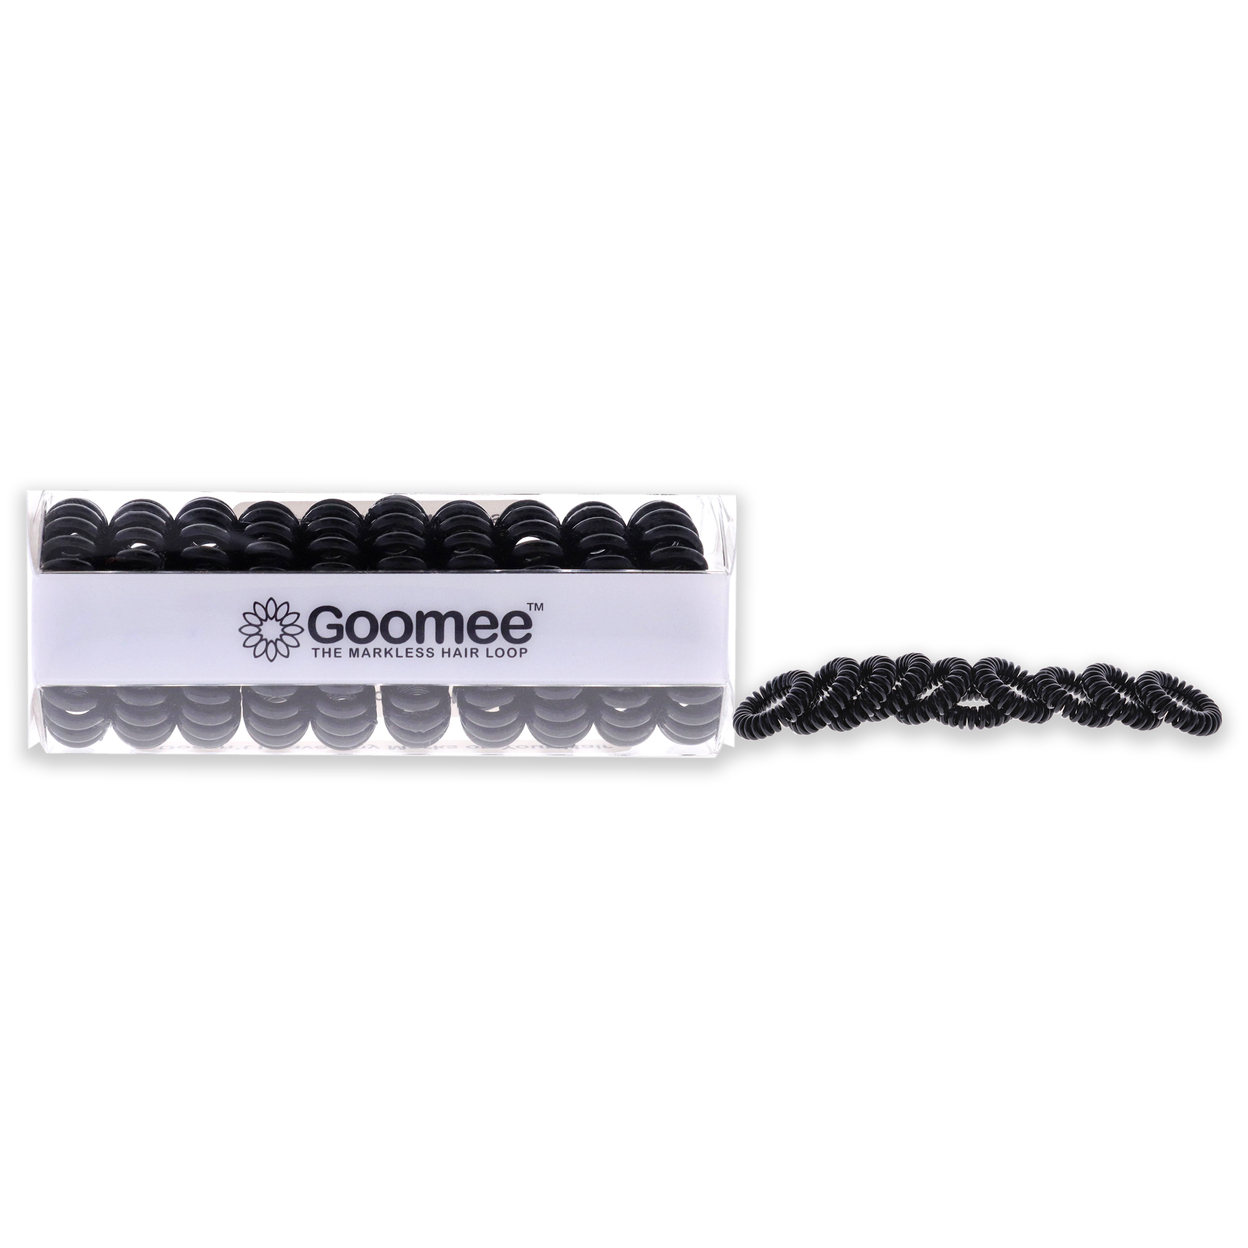 Goomee The Markless Hair Loop Set - Black Hair Tie 10 Pc